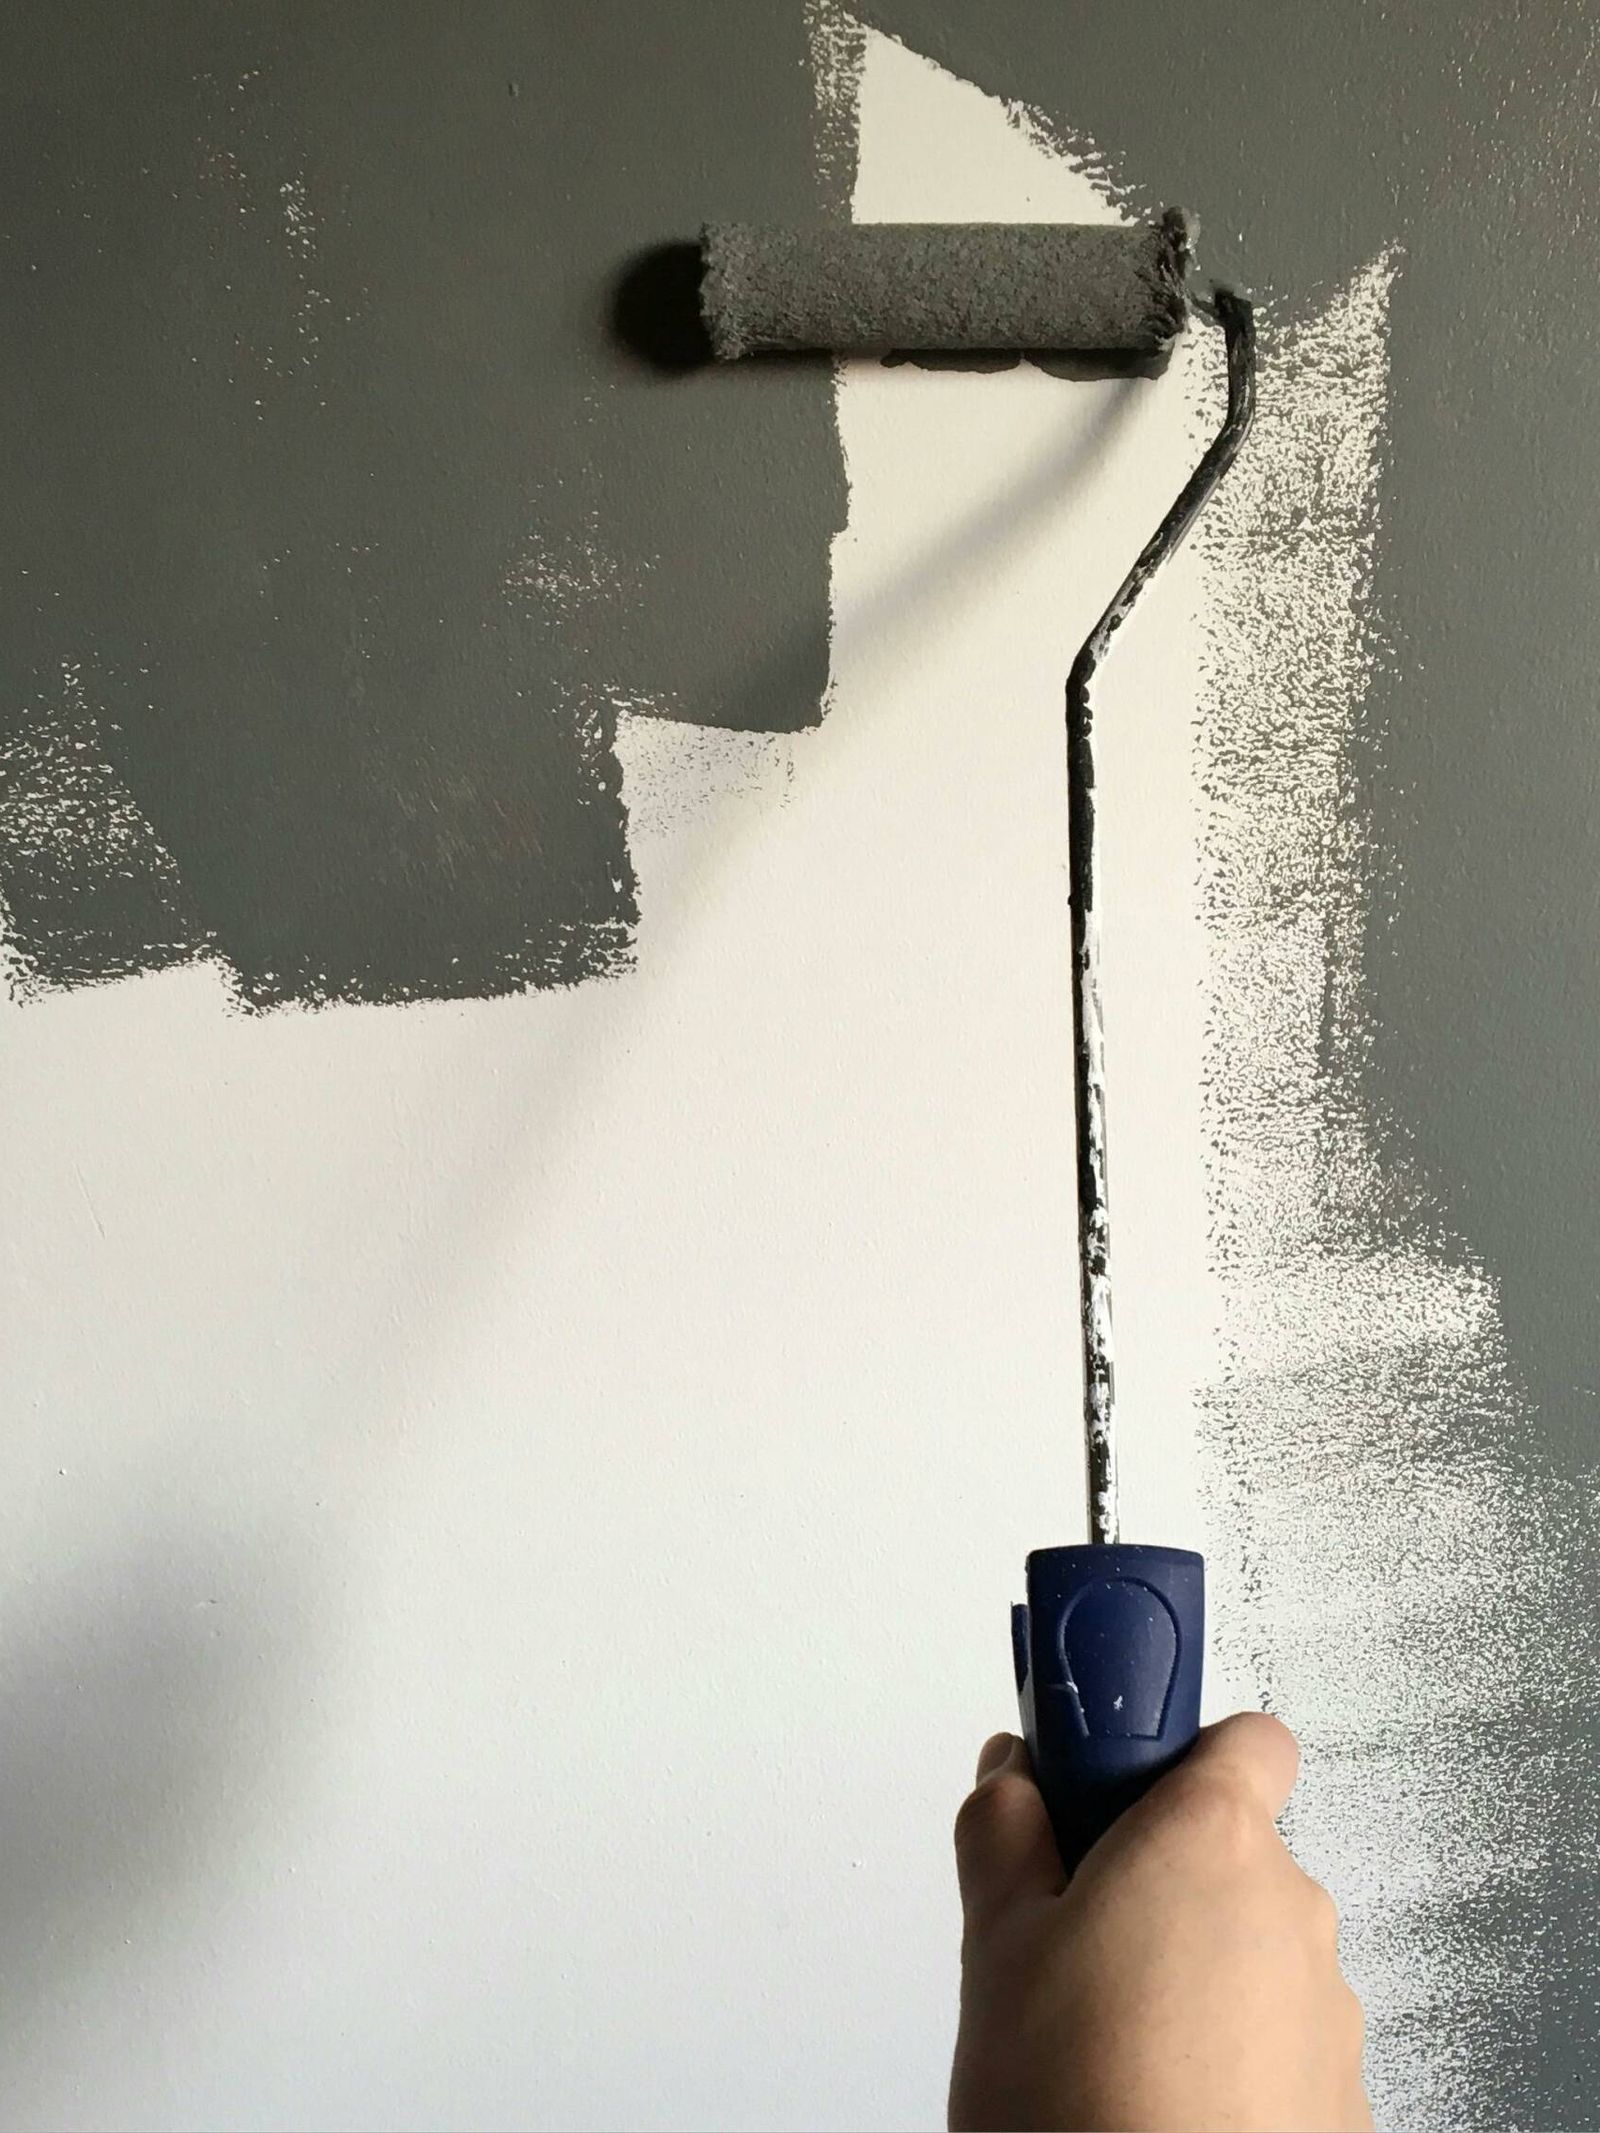 Este producto es capaz de eliminar las manchas viejas de pintura. (Pexels)